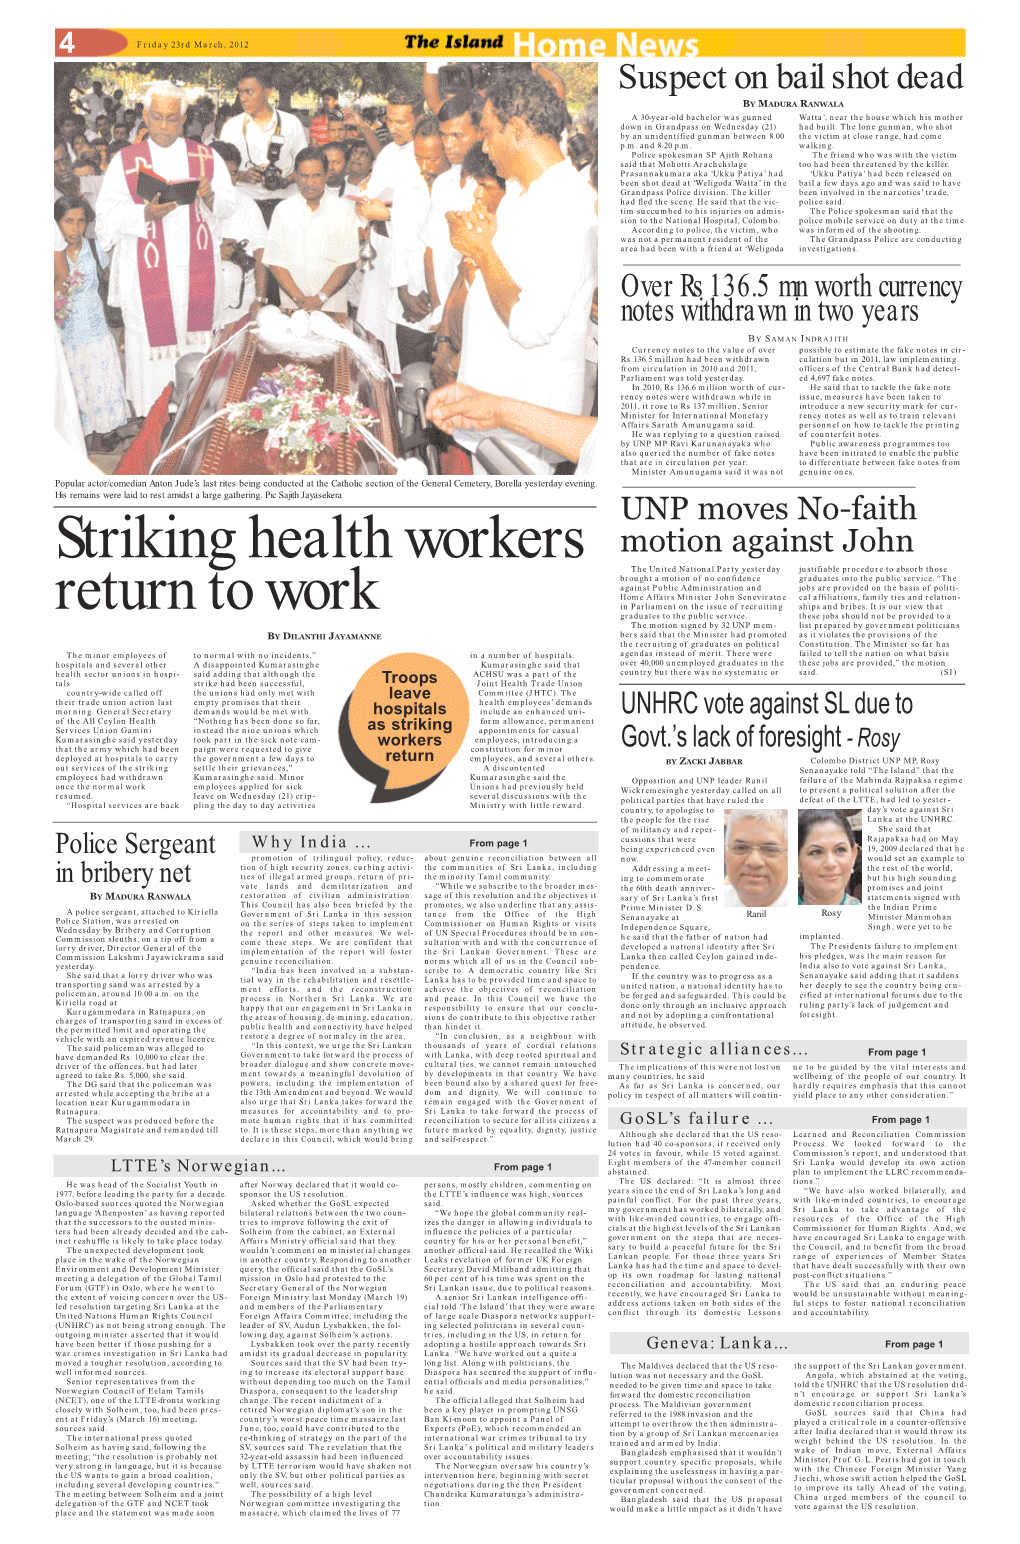 Striking Health Workers Return to Work